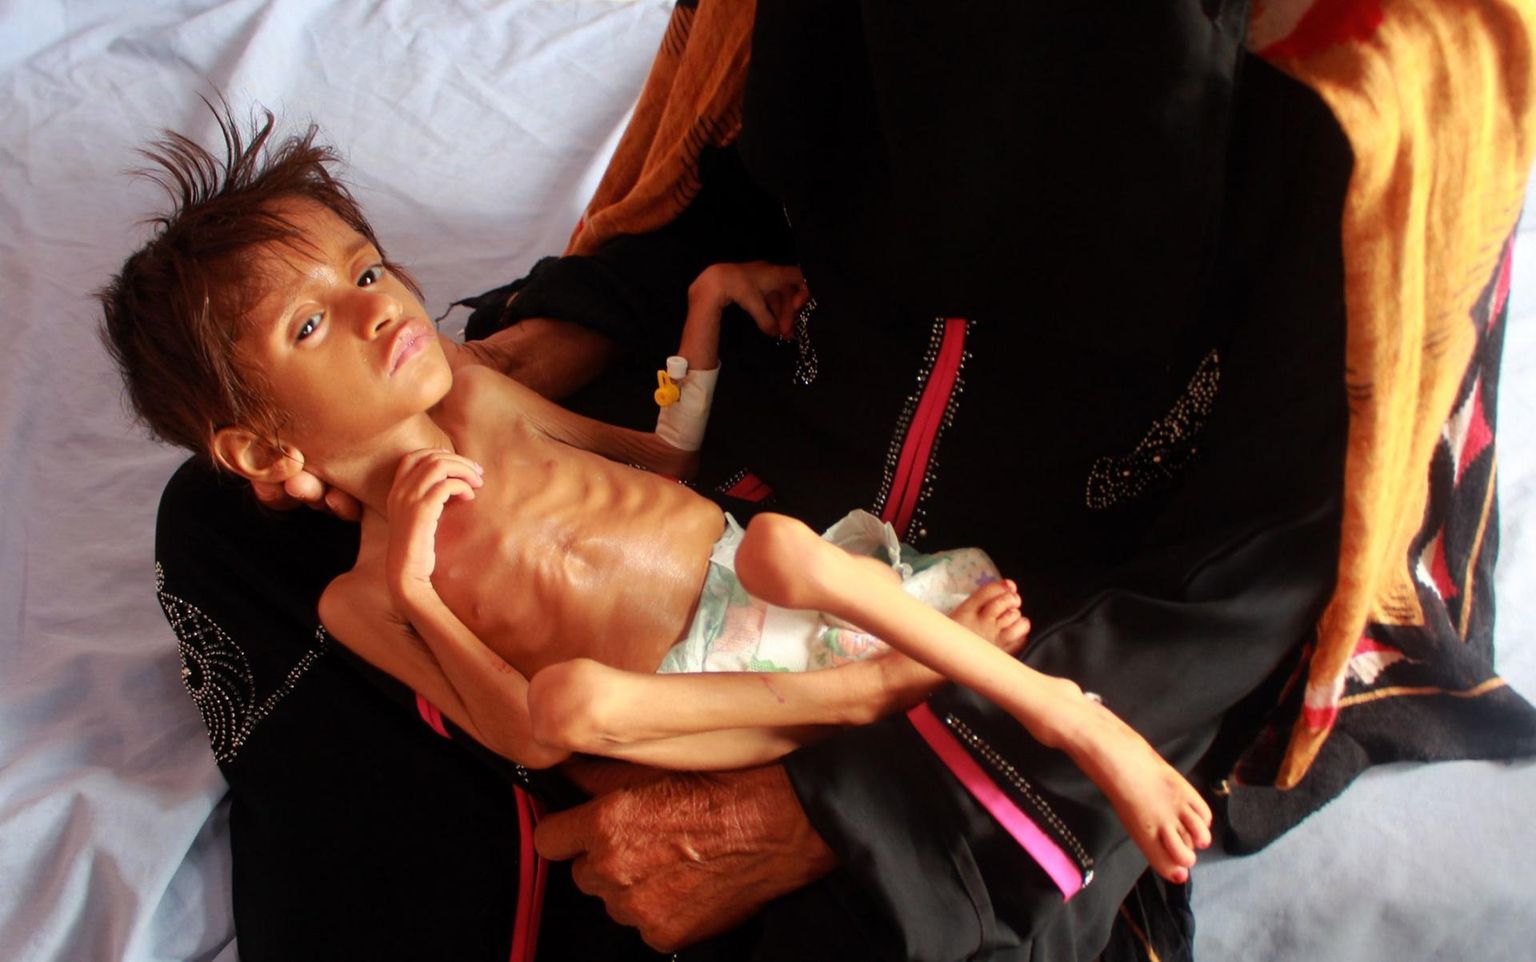 Tänavu 5. juulil Põhja-Jeemenis Hajjah’ provintsis tehtud foto alatoitumuses lapsest. ÜRO Lastefondi teatel elavad seal alatoitumuses miljonid lapsed ja tegu on praeguse maailma suurima humanitaarkriisiga. 